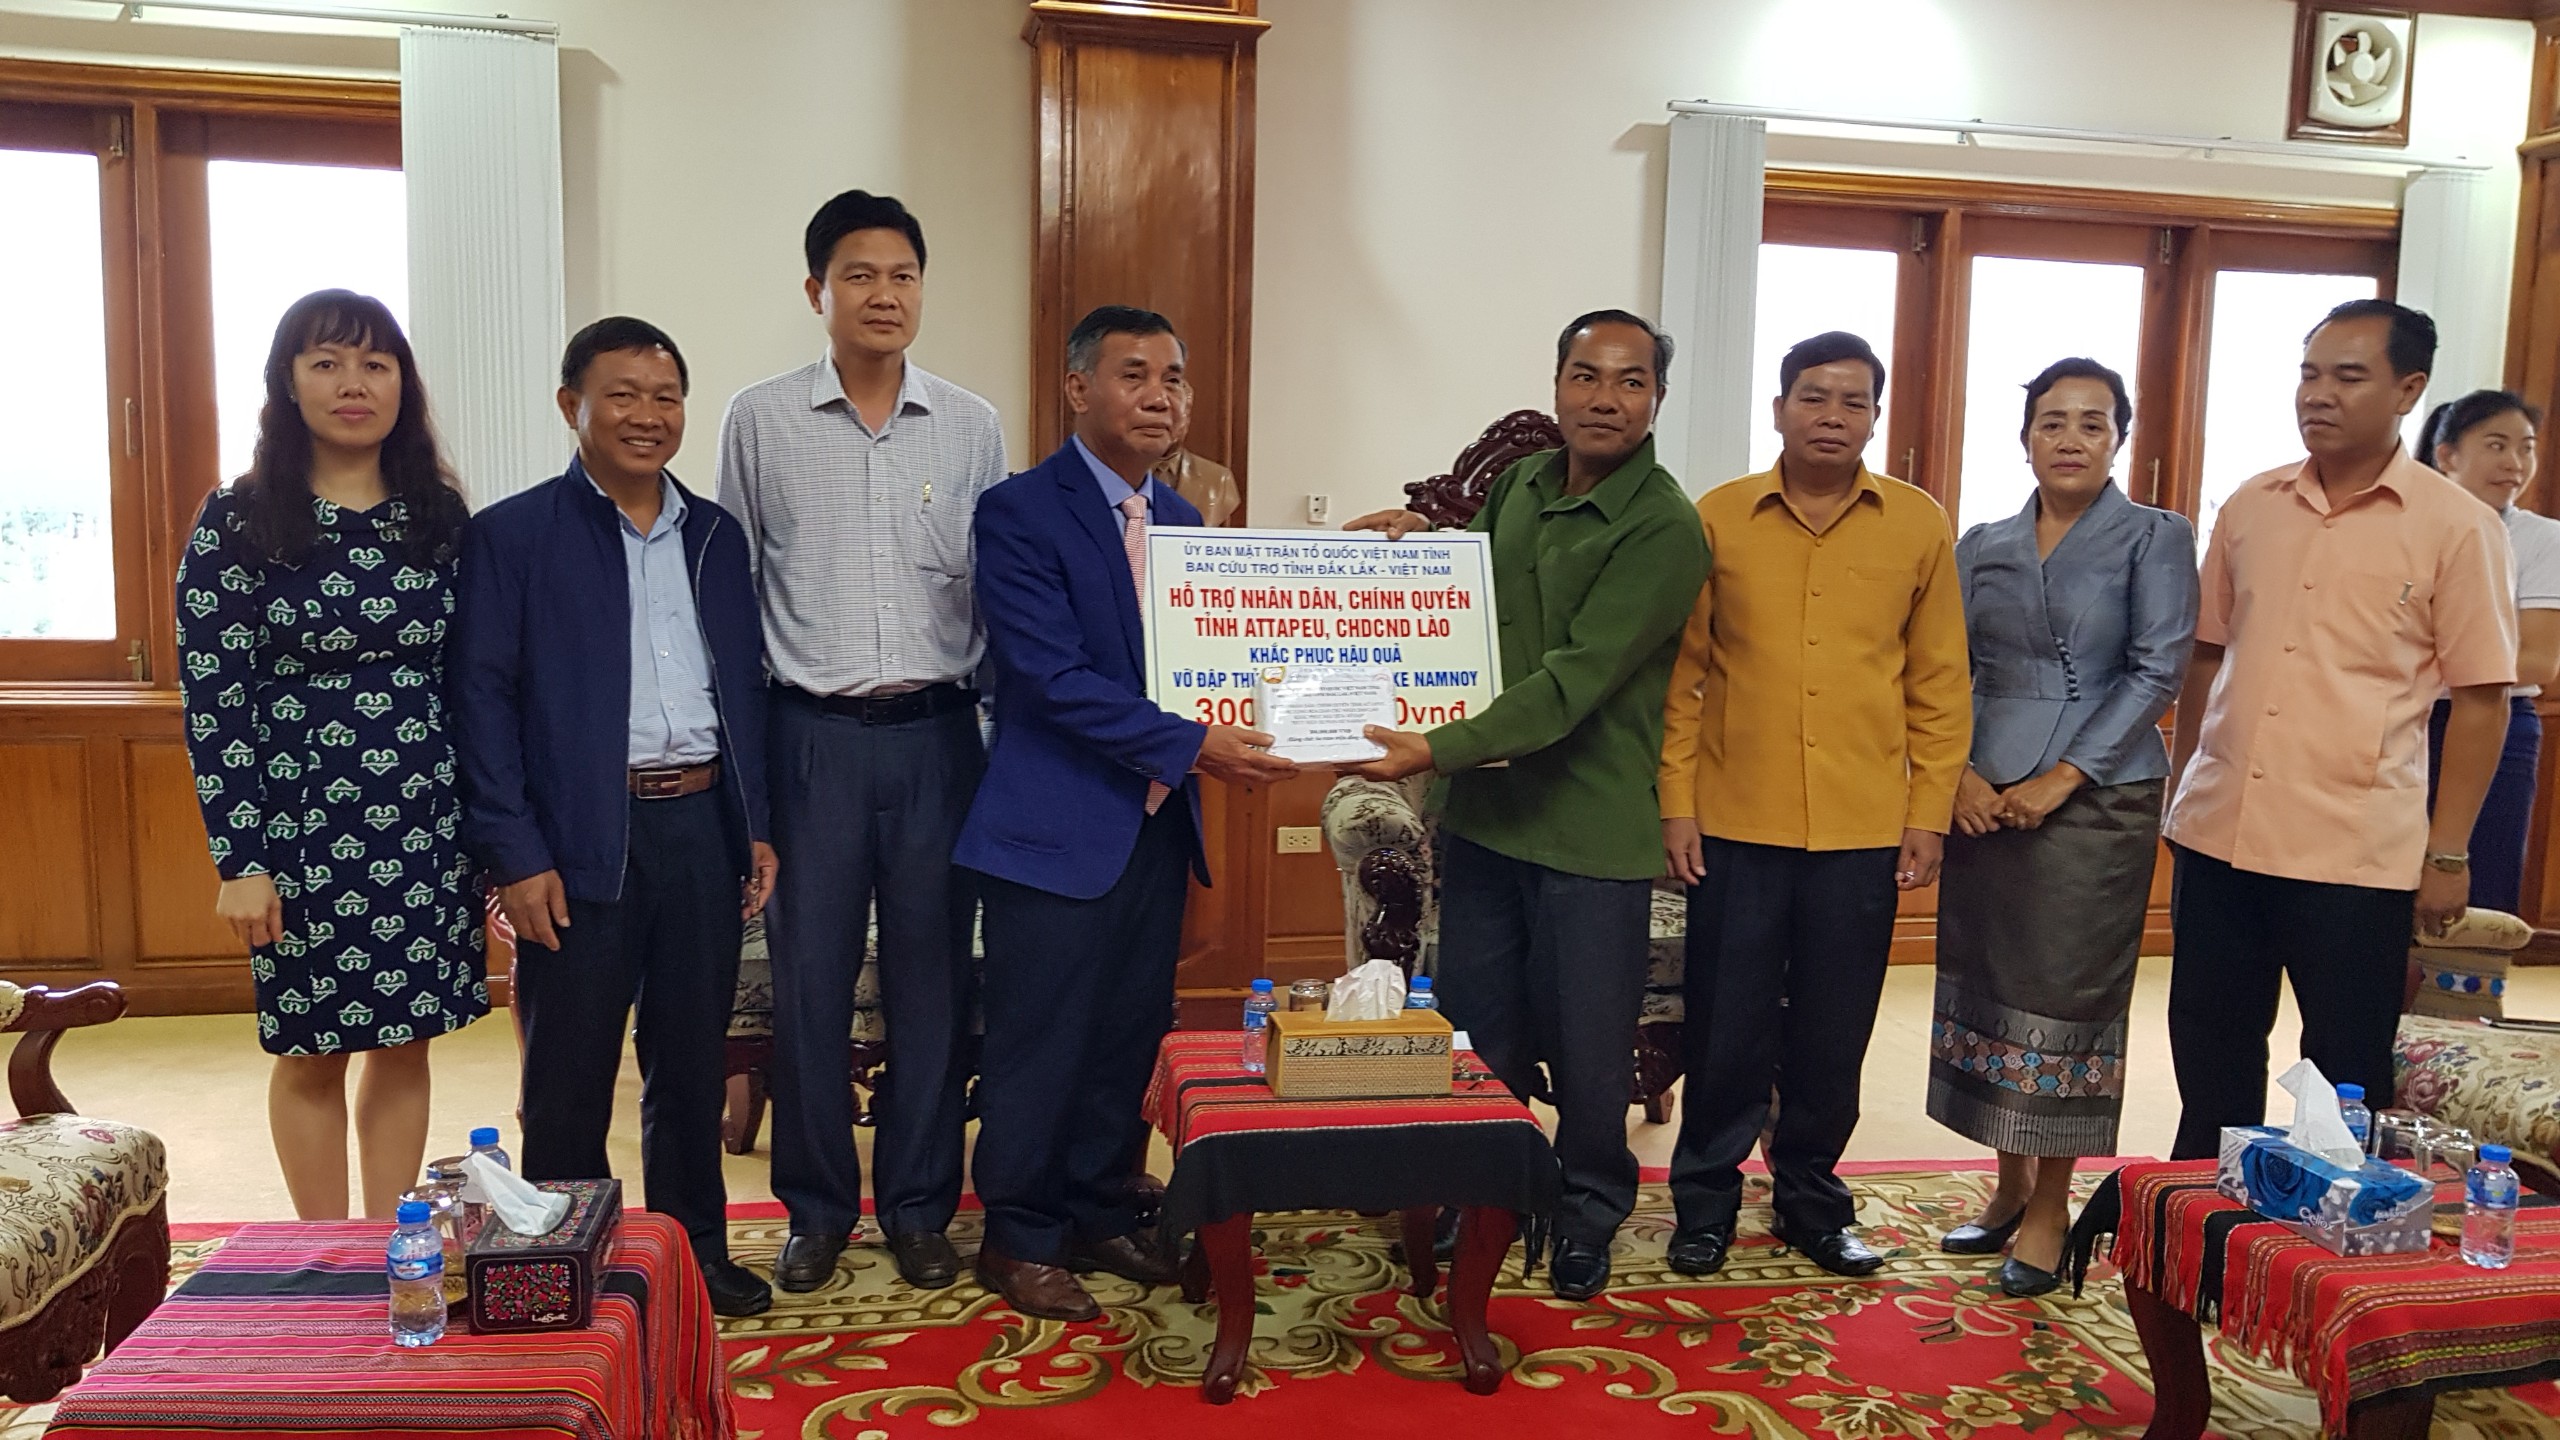 Đoàn công tác của tỉnh Đắk Lắk trao kinh phí hỗ trợ tỉnh Attapeu – CHDCND Lào